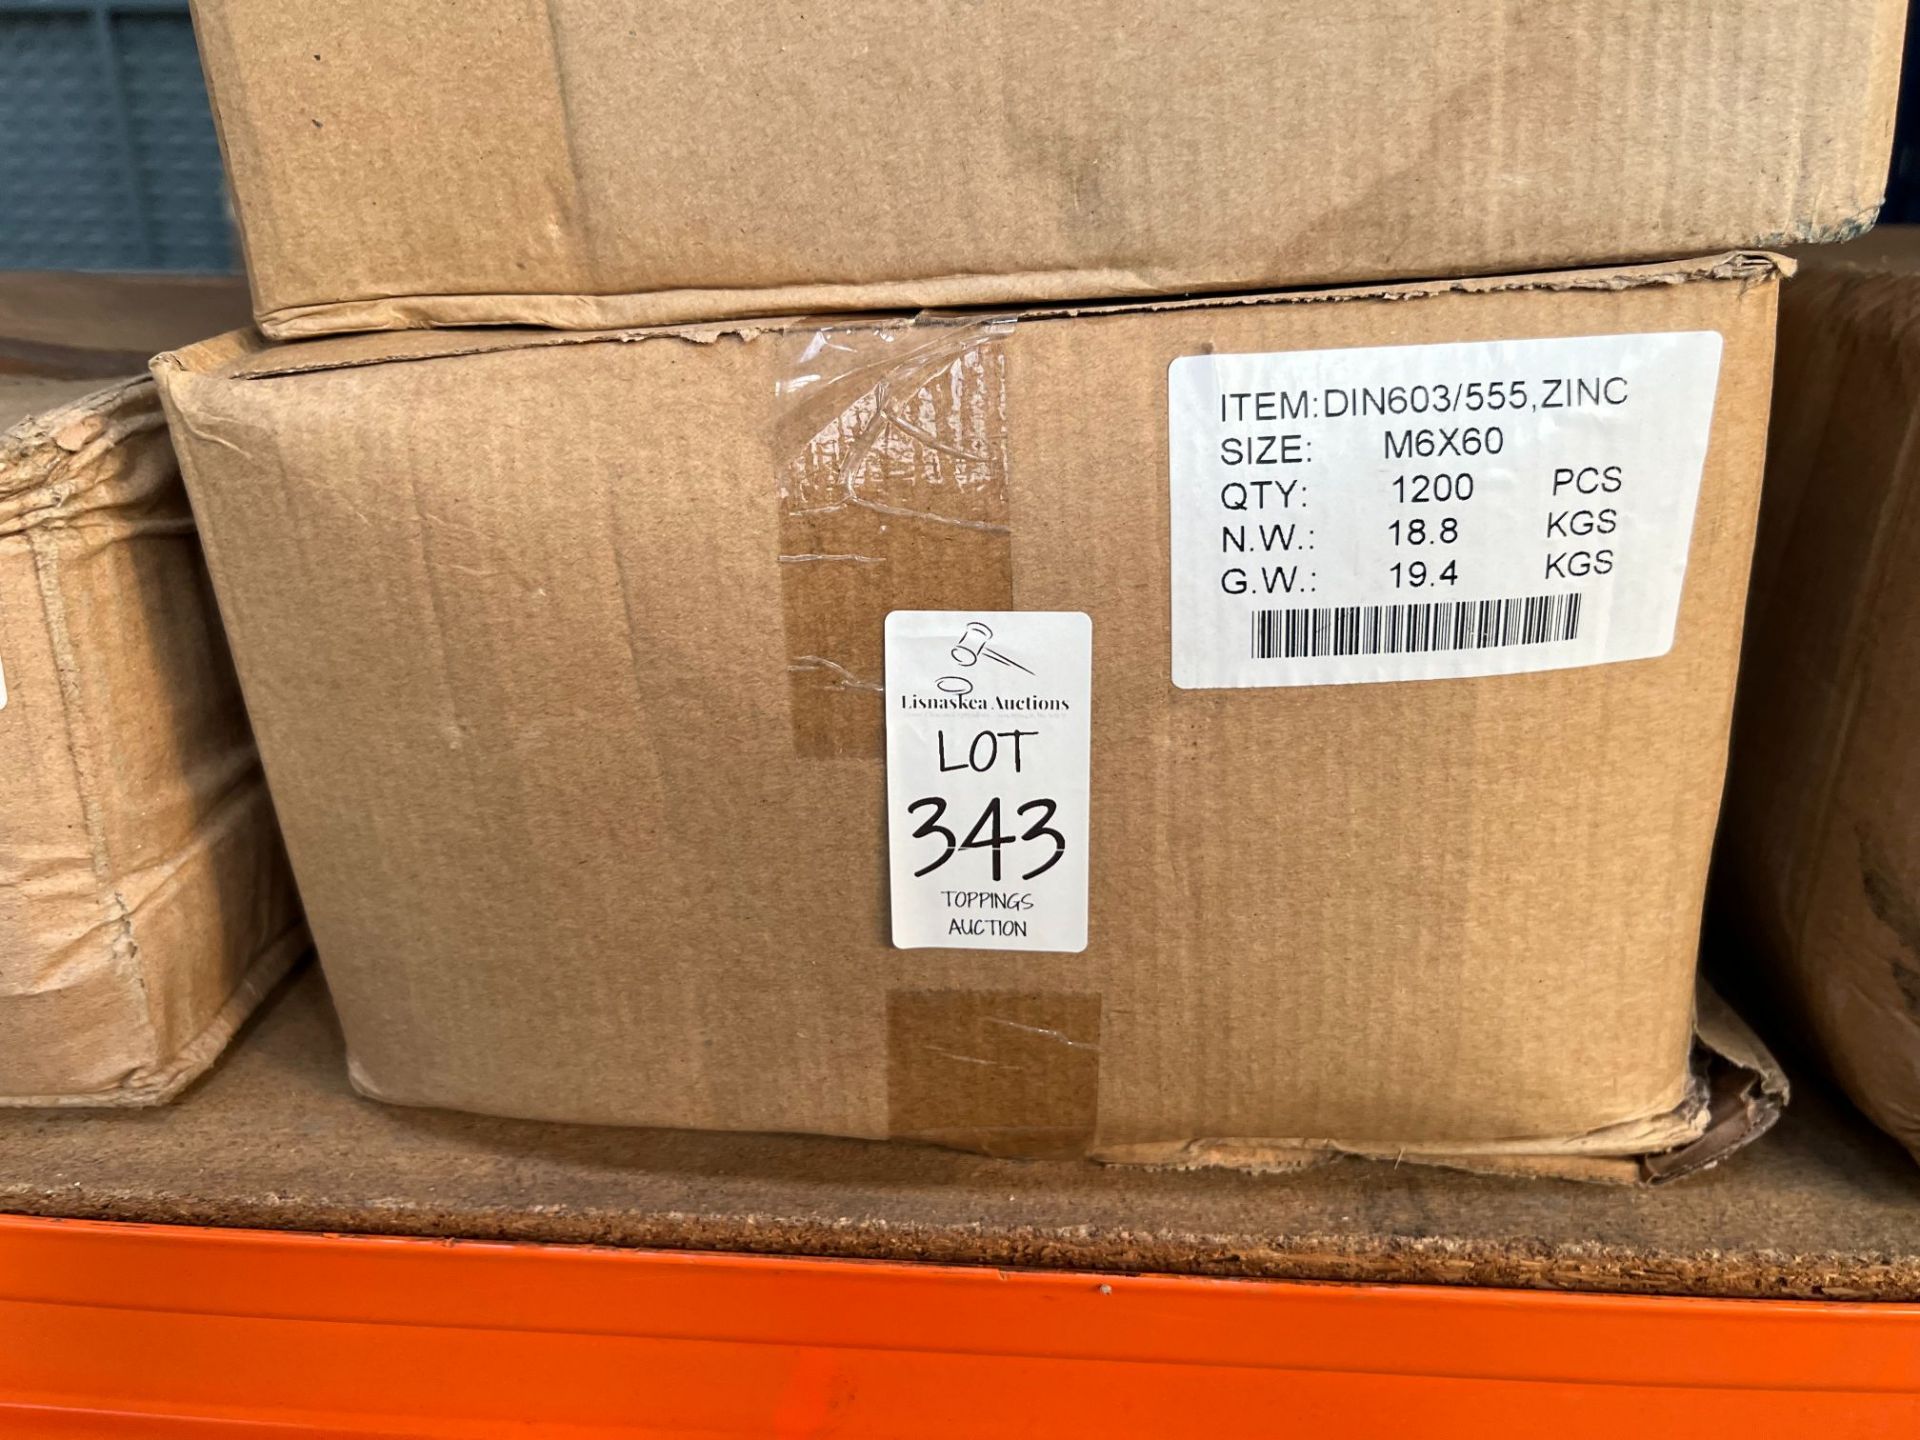 BOX OF 1200X M6 X 60 NUTS & BOLTS